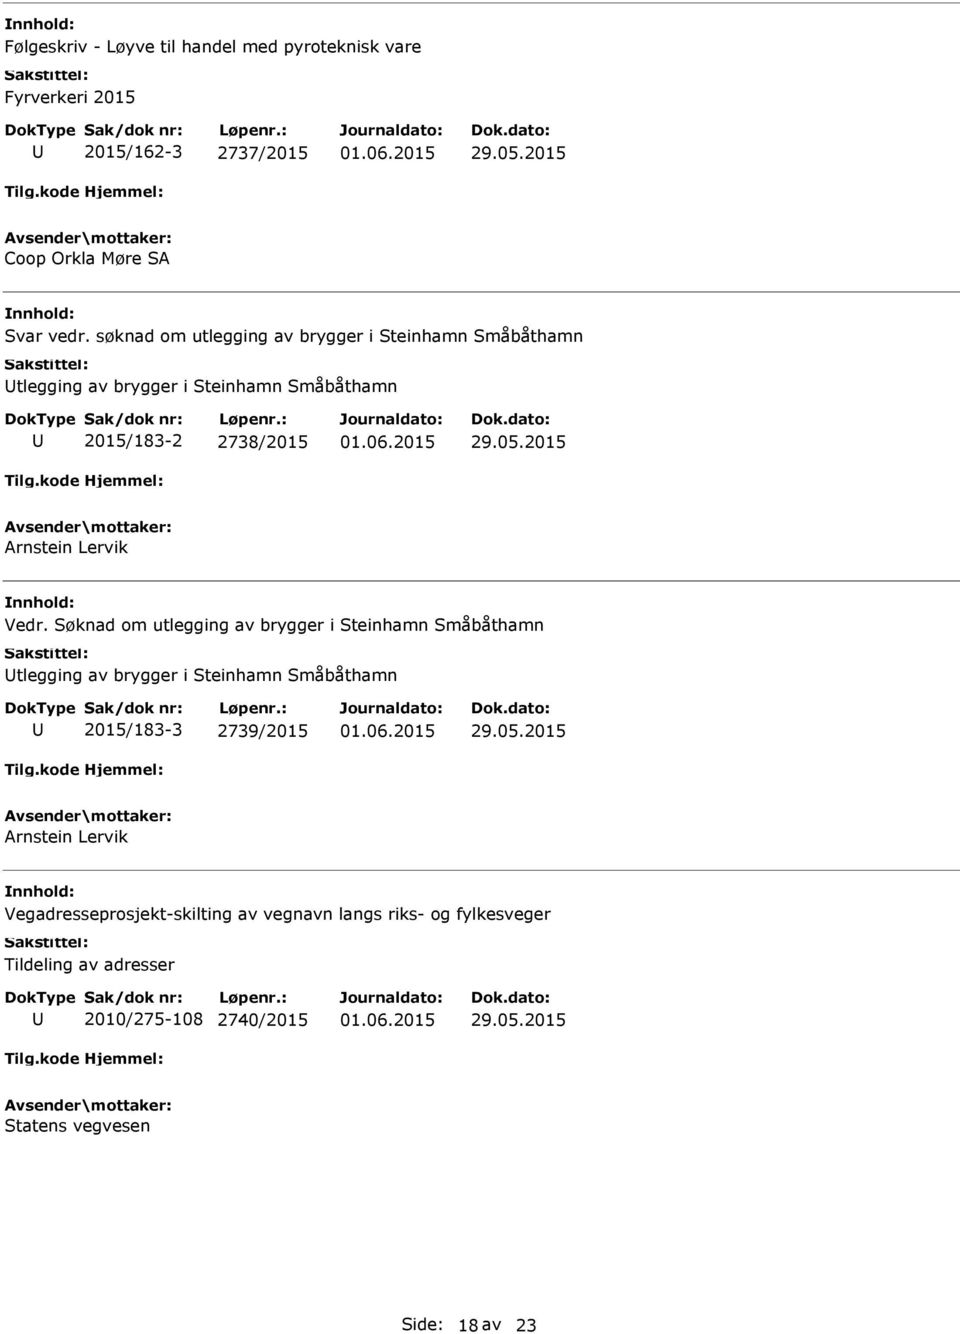 Vedr. Søknad om utlegging av brygger i Steinhamn Småbåthamn tlegging av brygger i Steinhamn Småbåthamn 2015/183-3 2739/2015 Arnstein